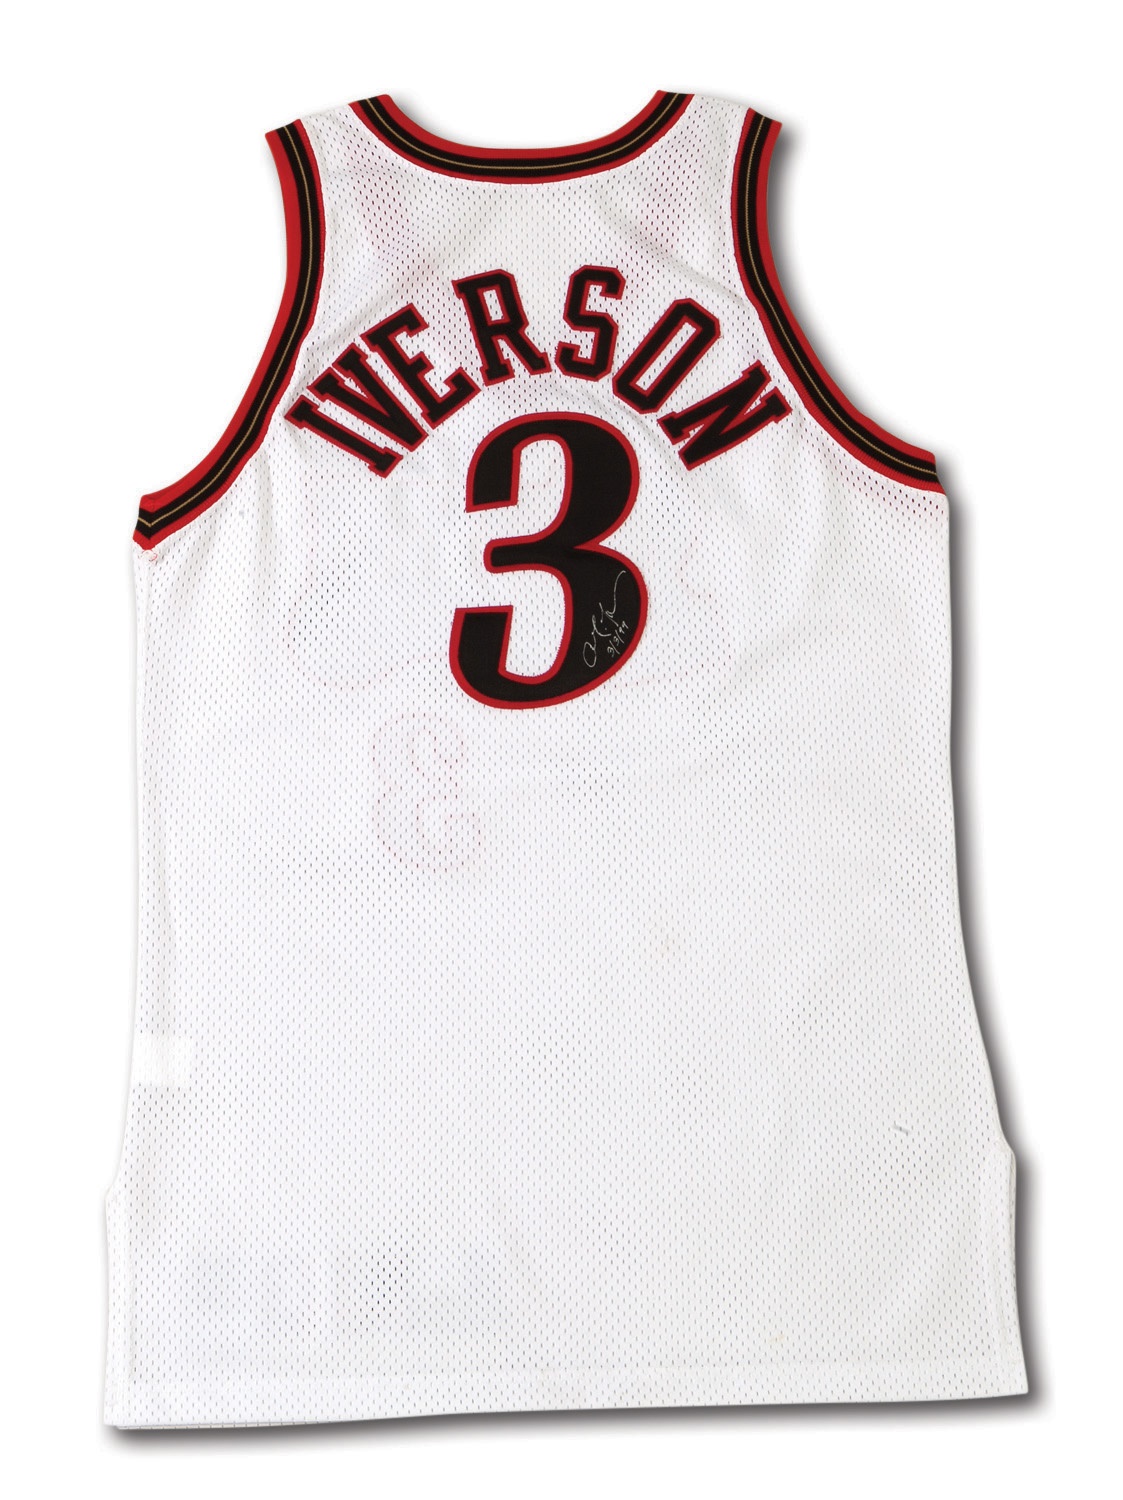 Allen Iverson Philadelphia 76ers Autographed Black 2001 NBA Finals